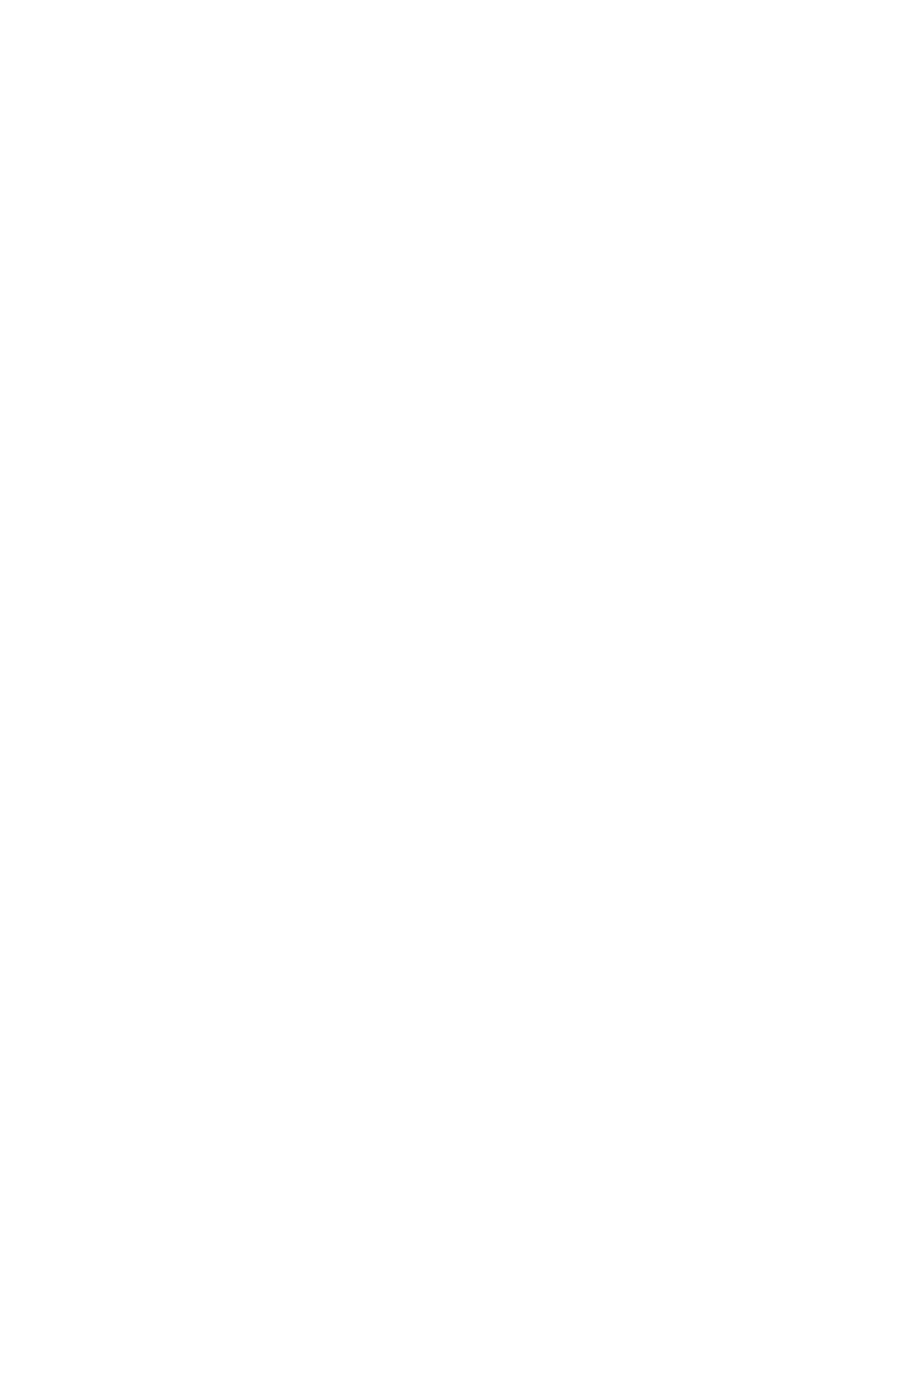 Сауле Сулейменова, Жаңа Өмір, 2019, ПВХ-тегі пластикалық пакеттер, 120 x 80 см, 47 x 31 инч